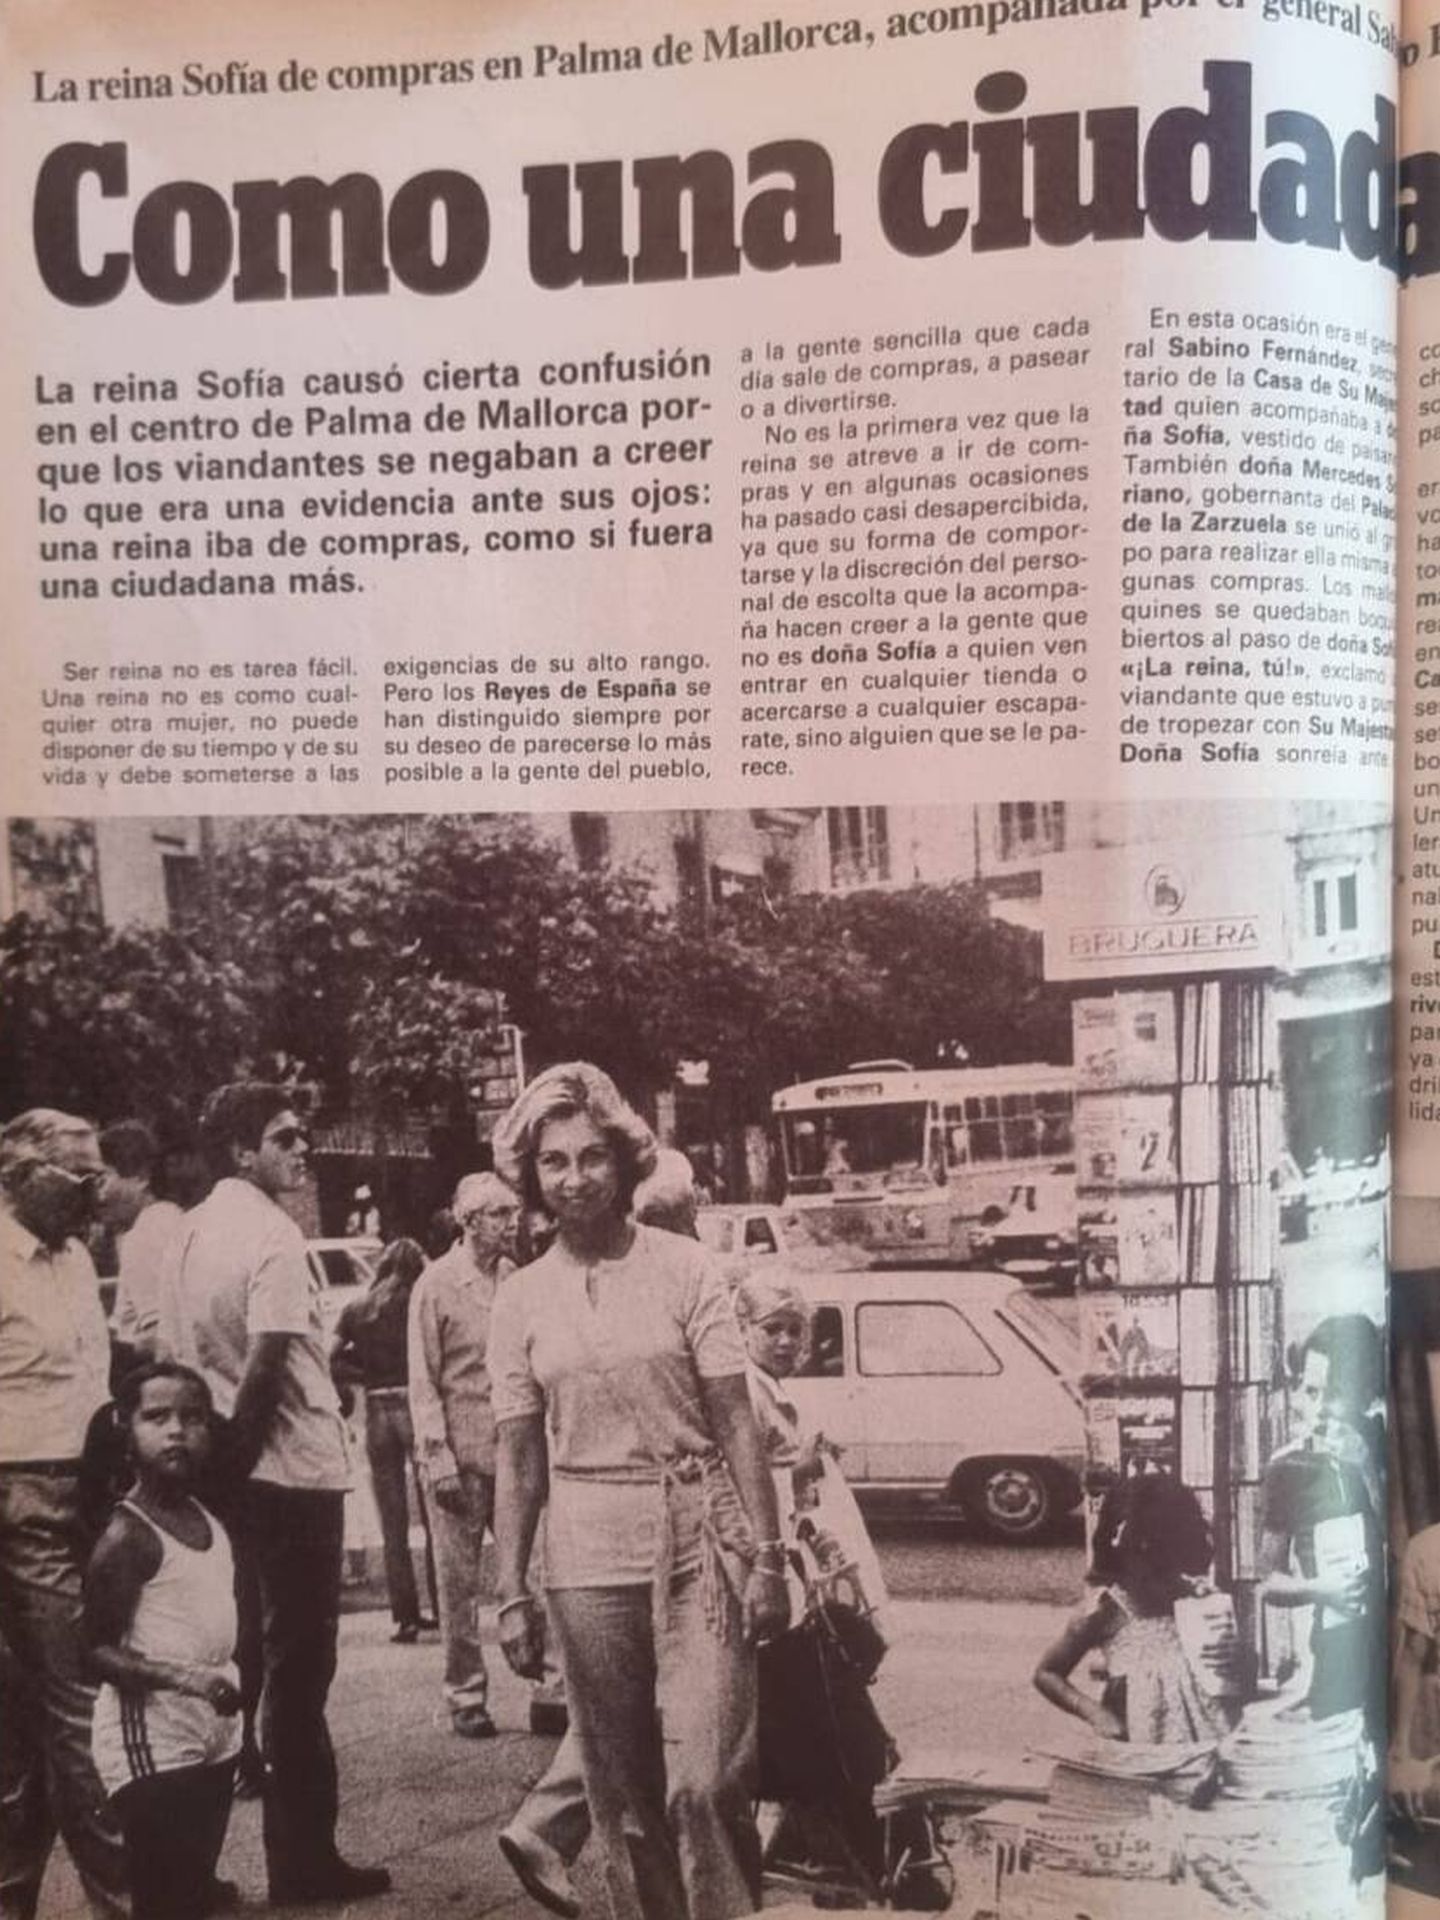 Imagen del reportaje de la revista 'Tiempo' a la reina Sofía en 1988. (Paloma Barrientos)